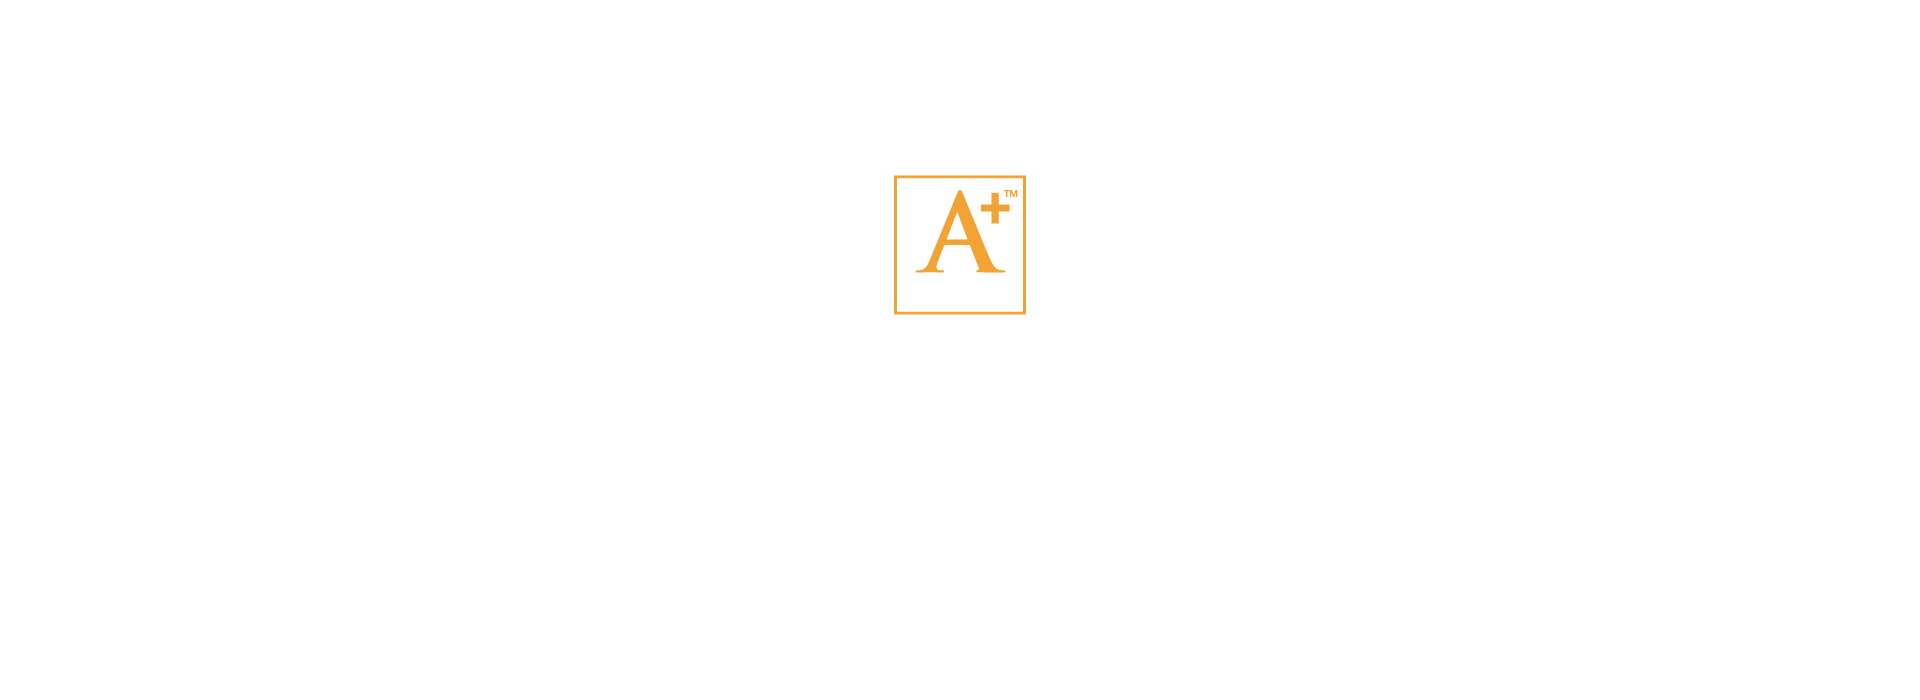 2020 Awards